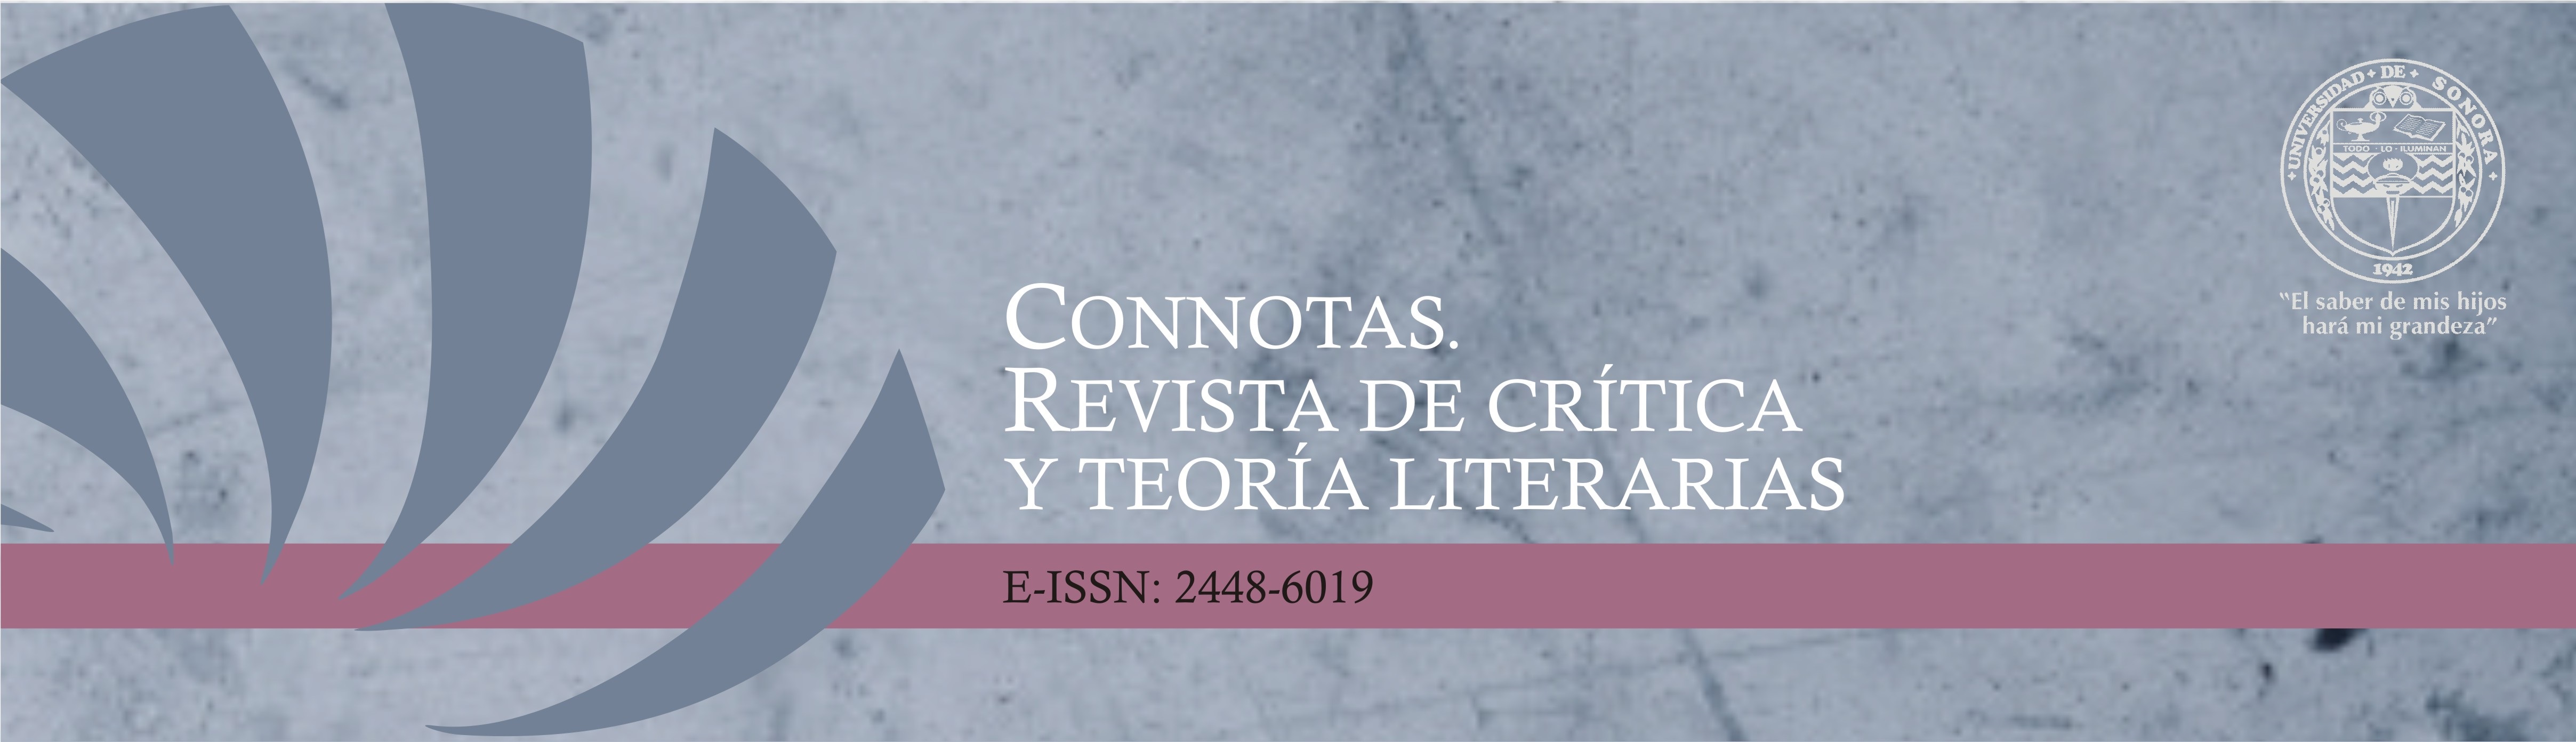 Banner de Connotas. Revista de crítica y teoría literarias, con nombre completo de la revista, ISSN electrónico y logo de la institución editora, la Universidad de Sonora.